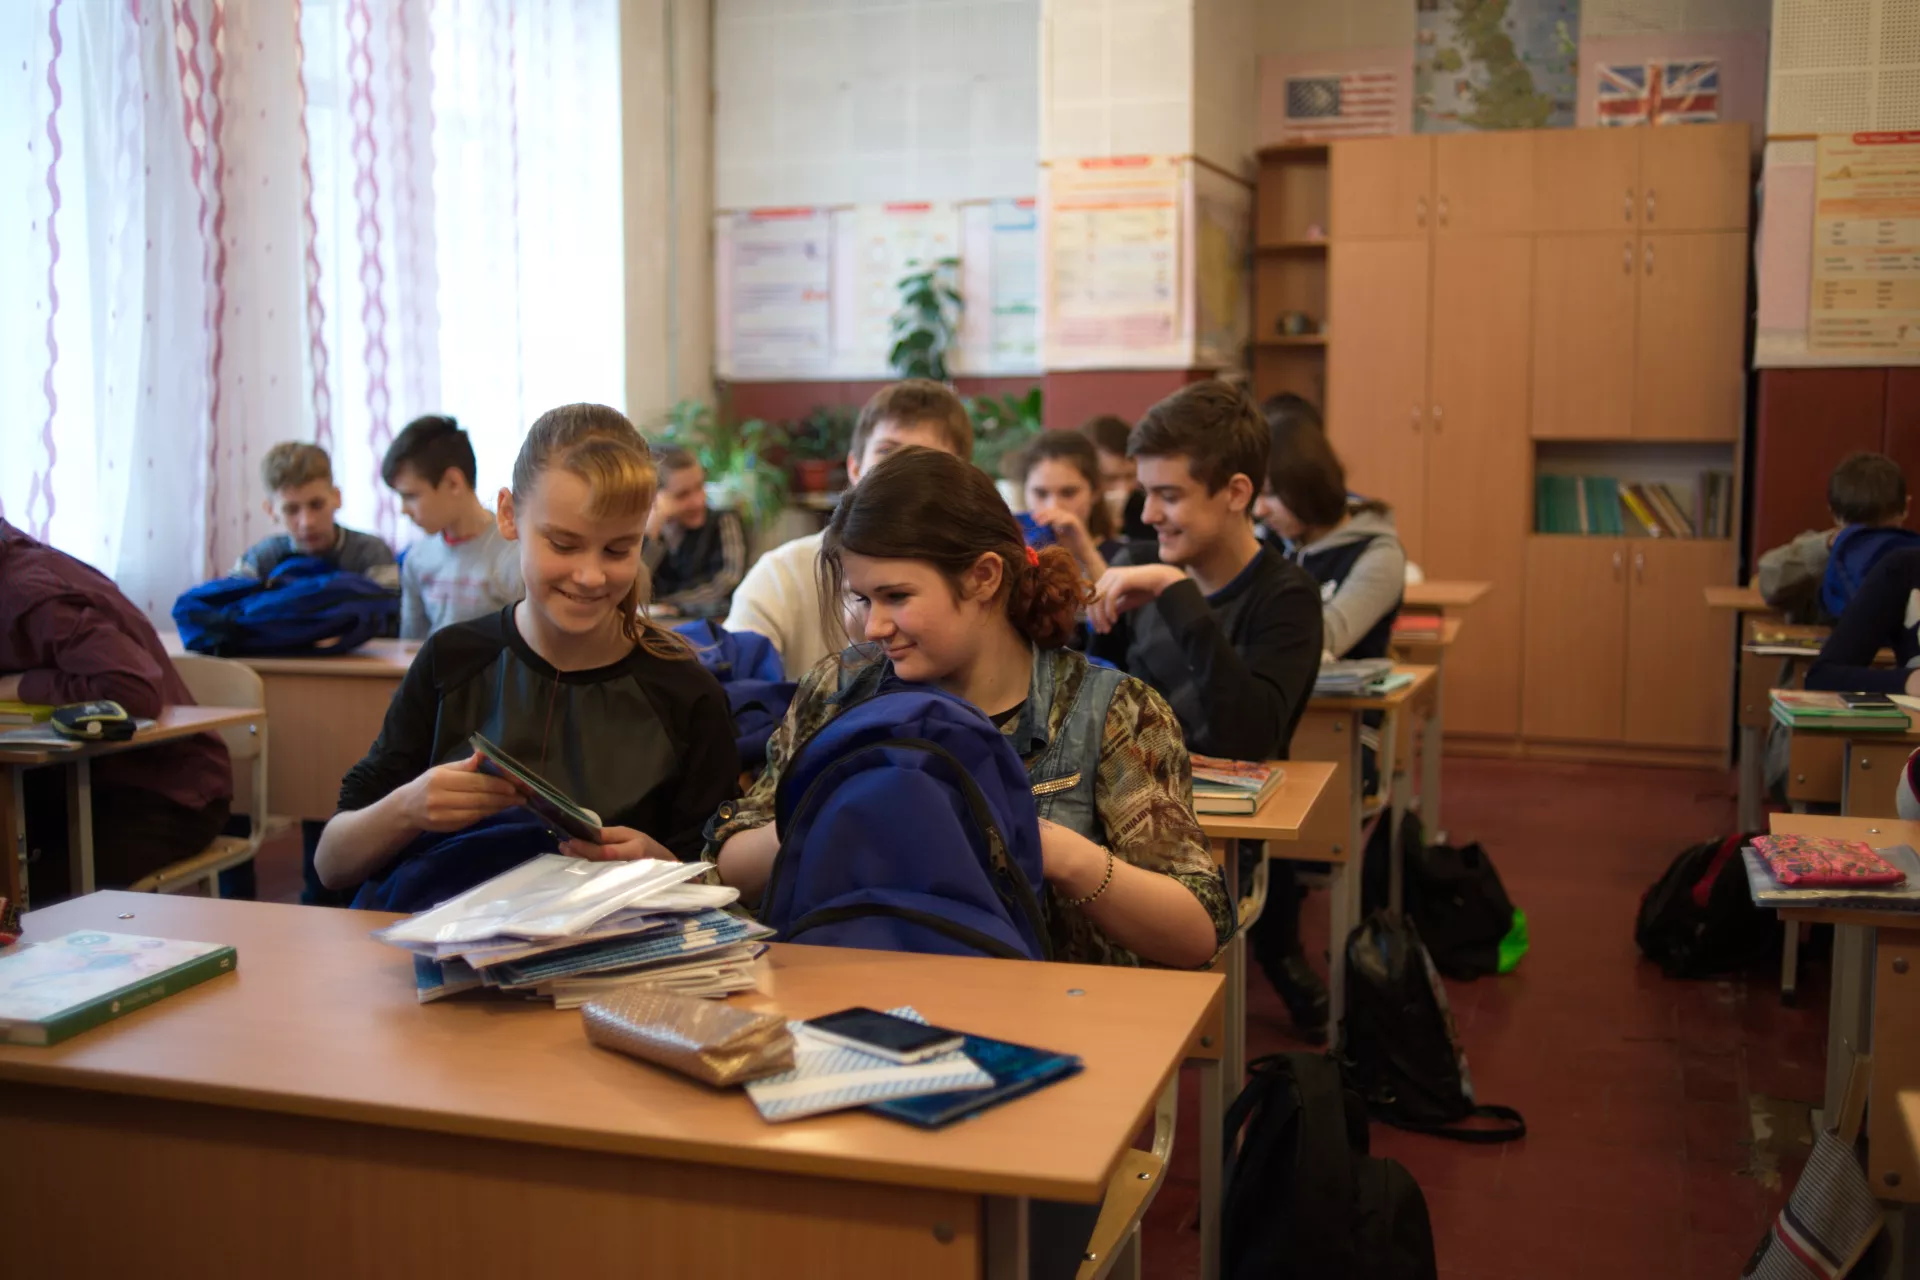 School children in eastern Ukraine receive UNICEF education supplies